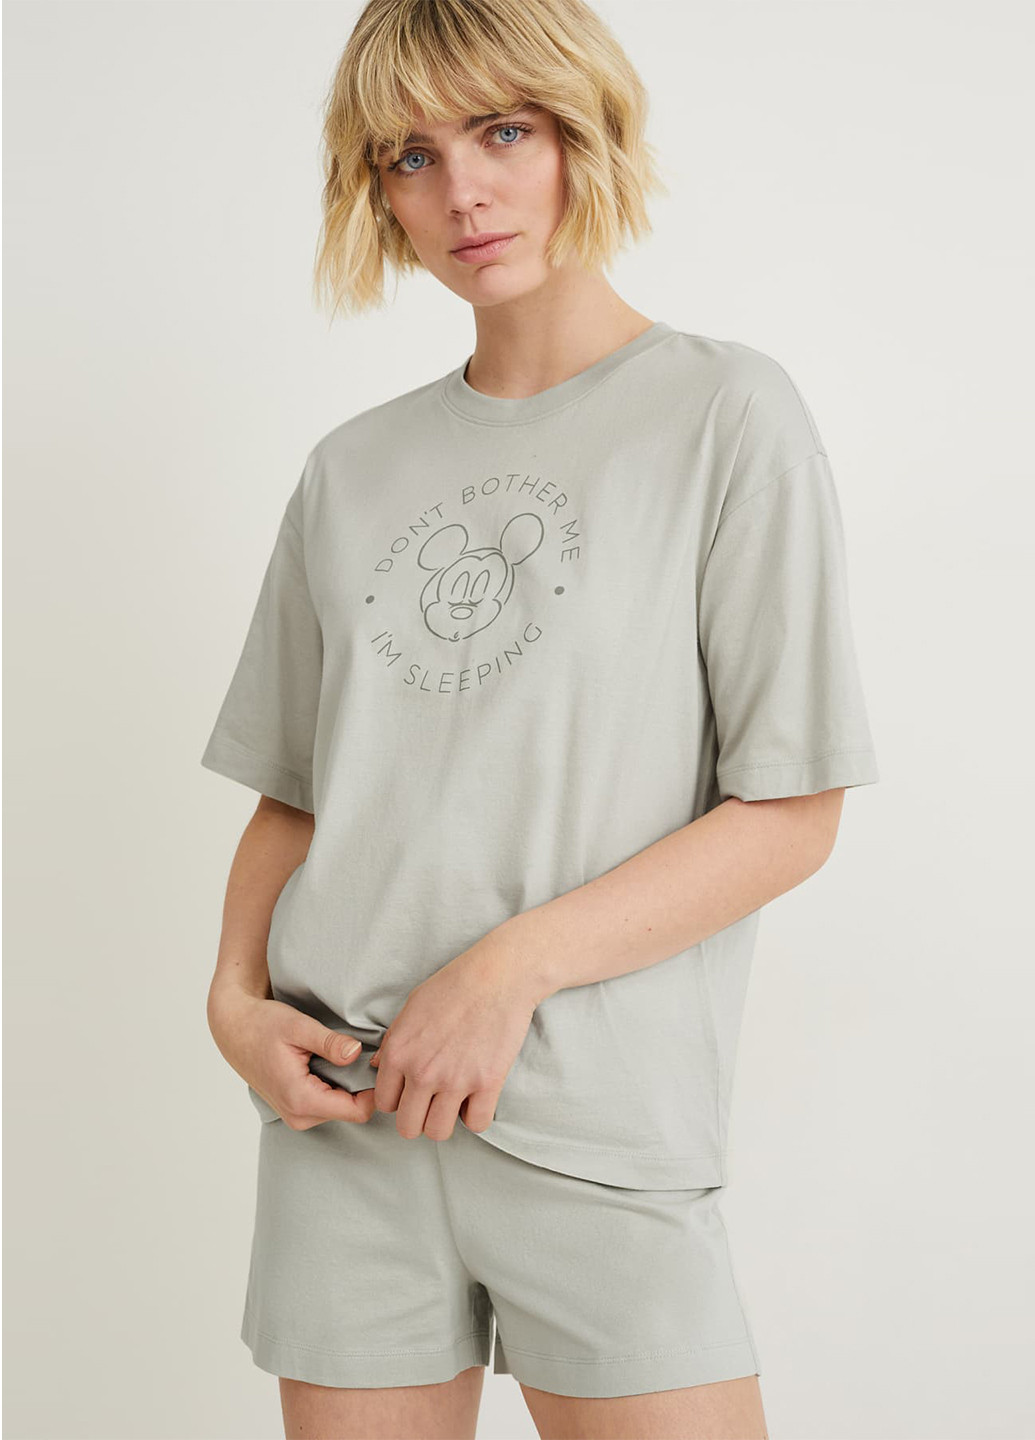 Сіро-зелена всесезон піжама (футболка, шорти) футболка + шорти C&A